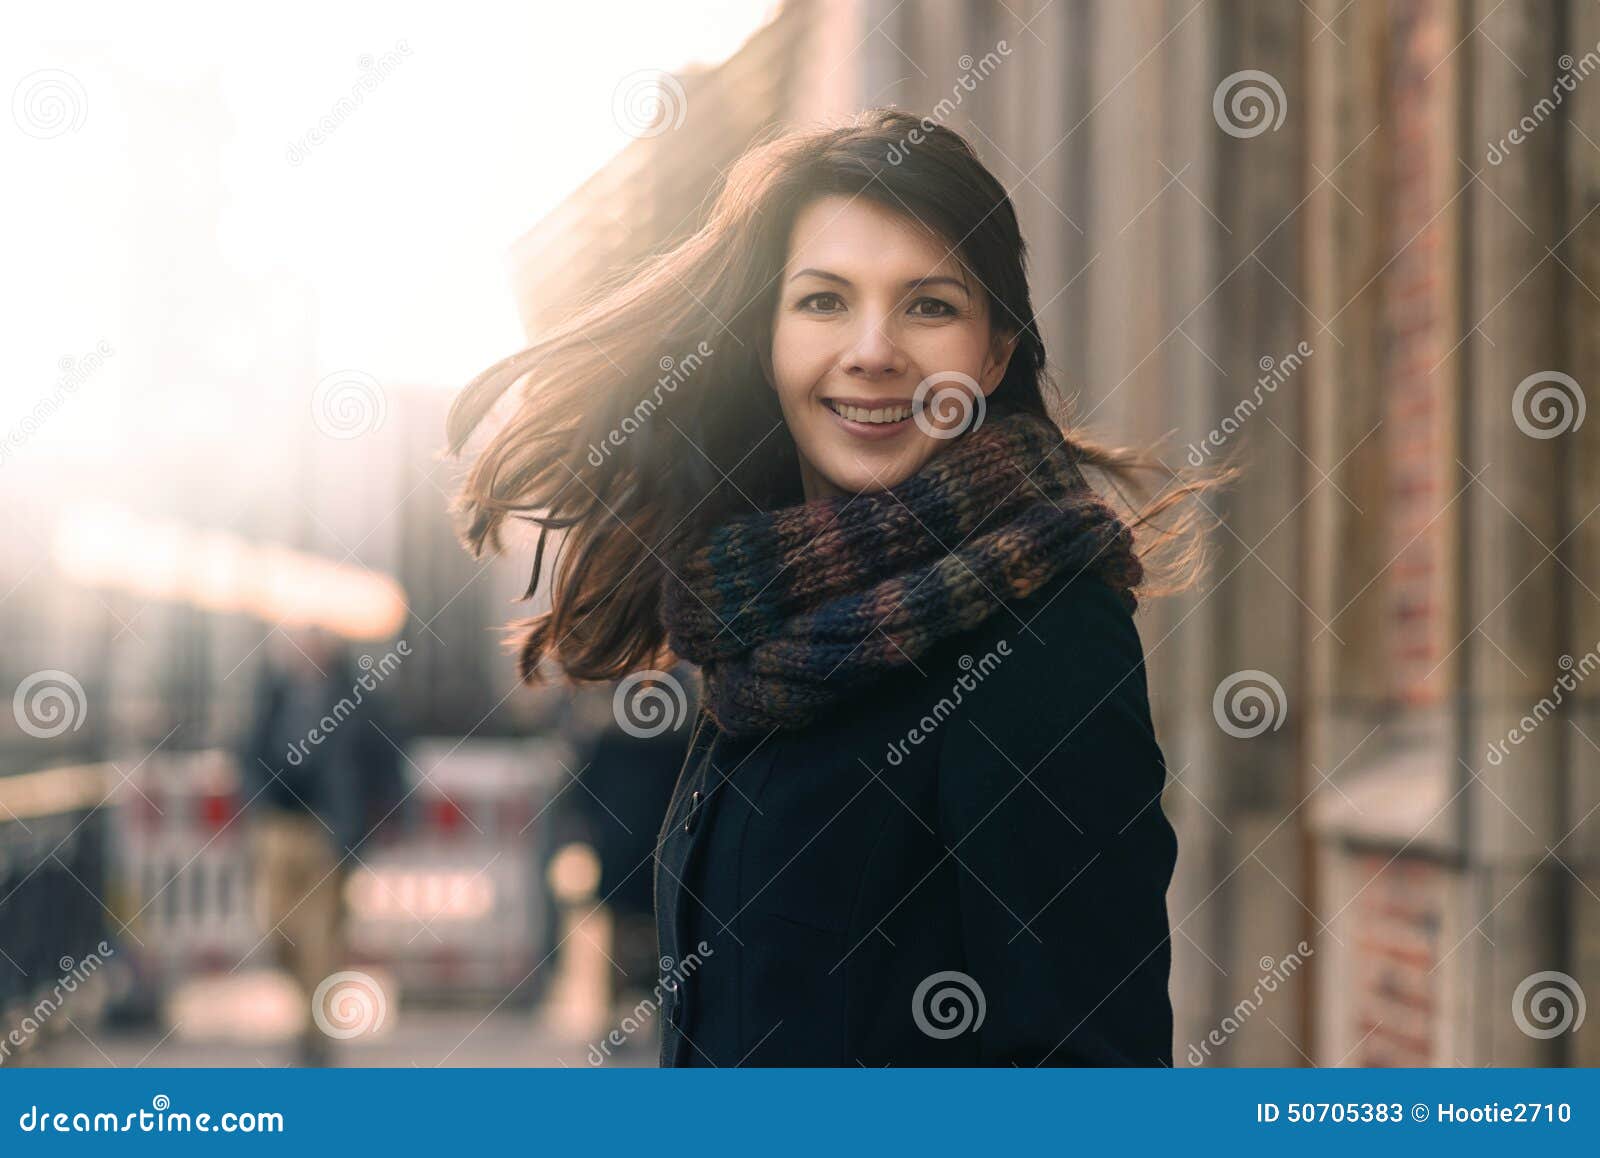 Glückliche Frau Mit Einem Reizenden Lächeln Auf Einer Winterstraße Stockbild Bild Von